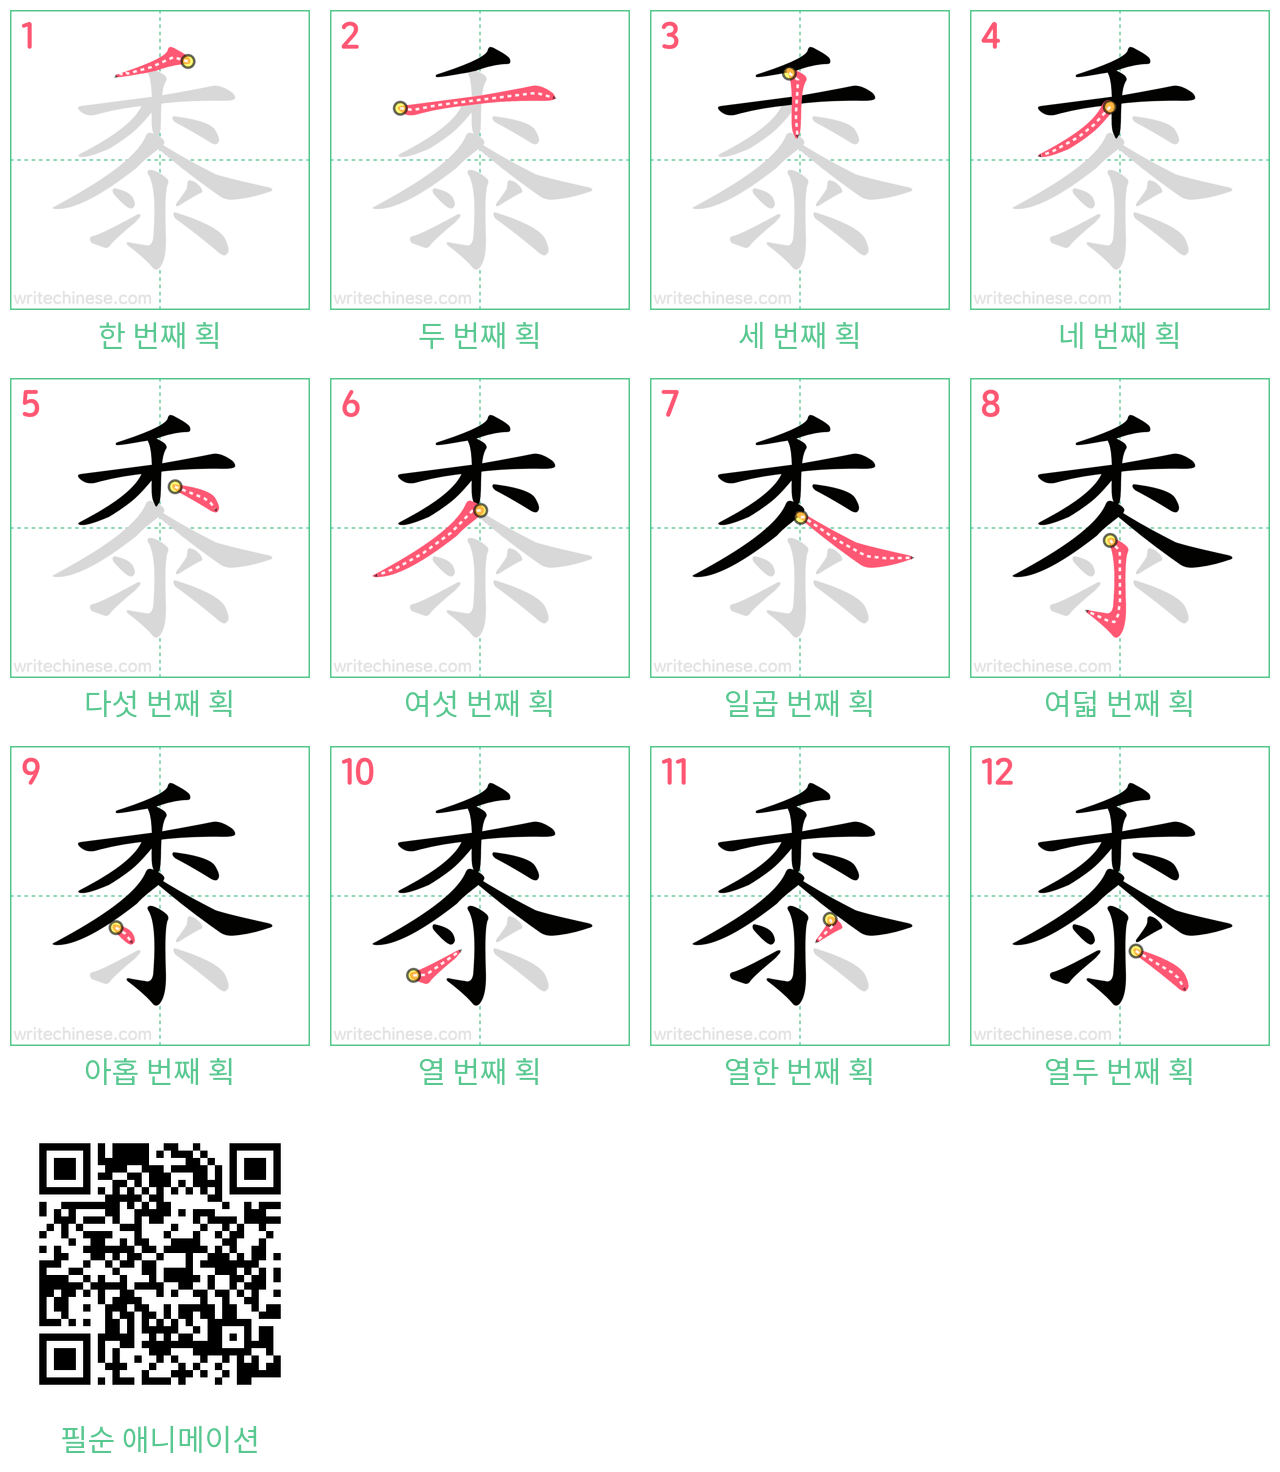 黍 step-by-step stroke order diagrams